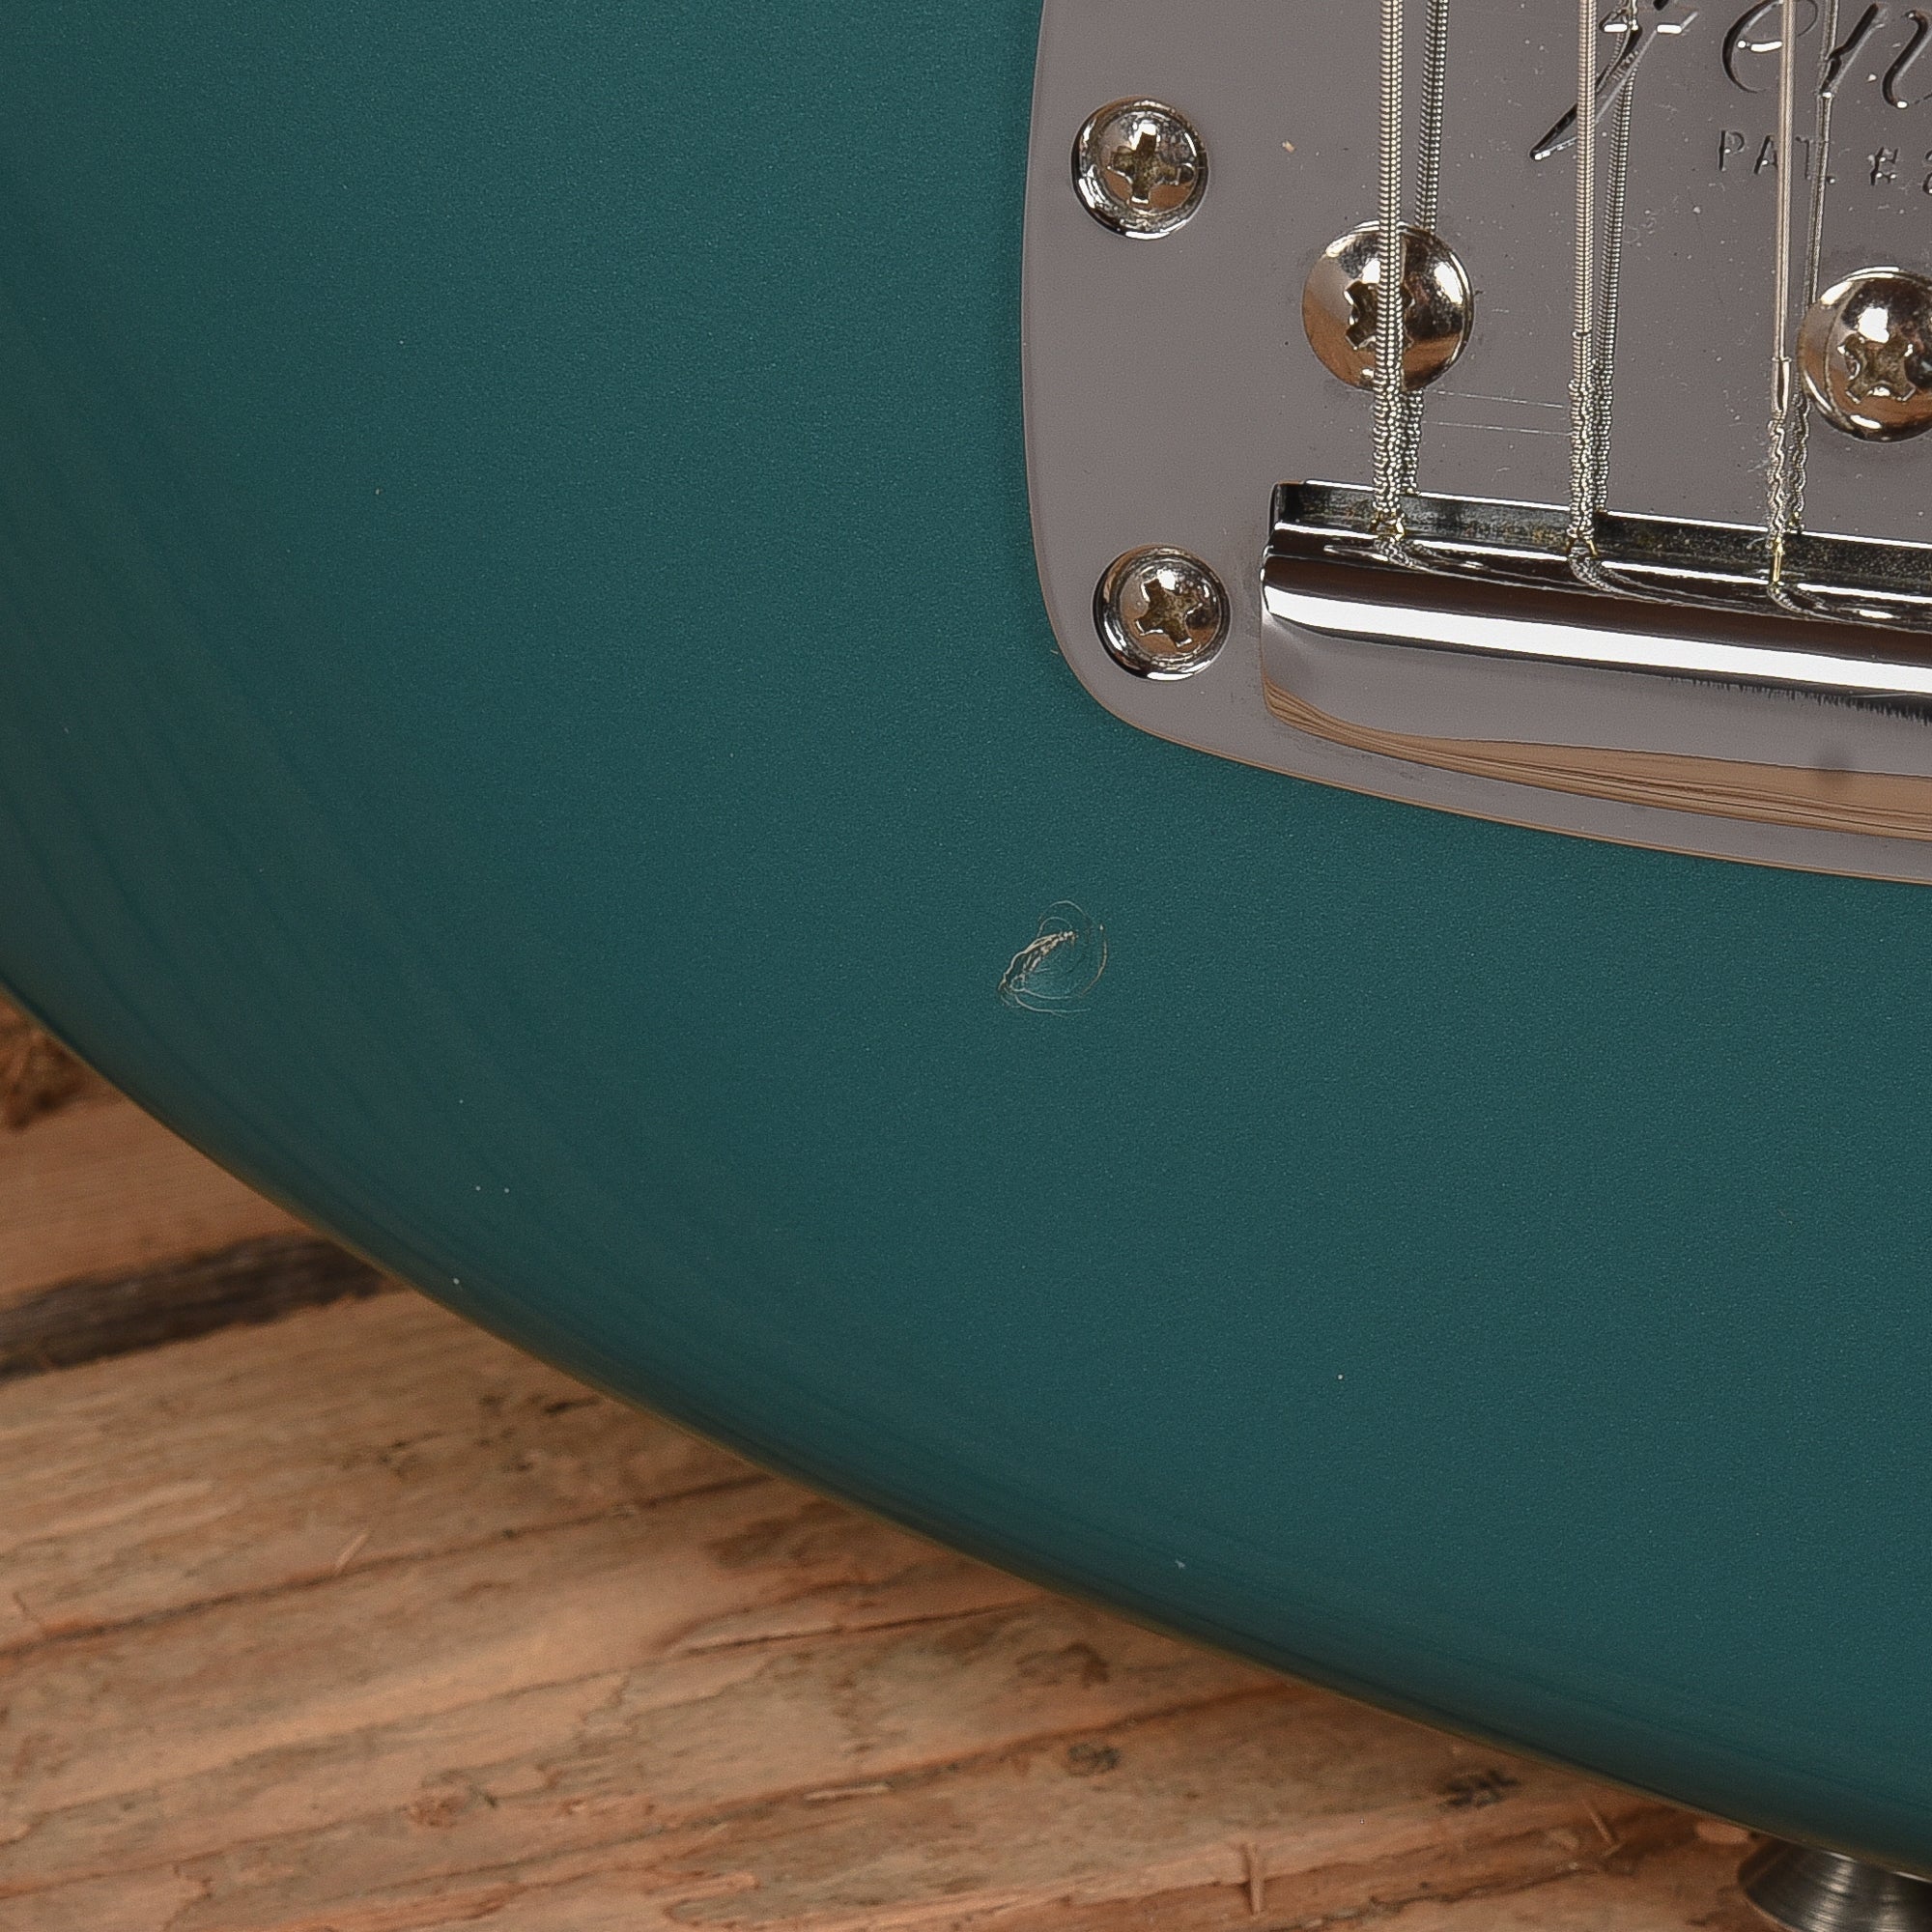 Fender American Vintage '62 Jaguar Ocean Turquoise 2017